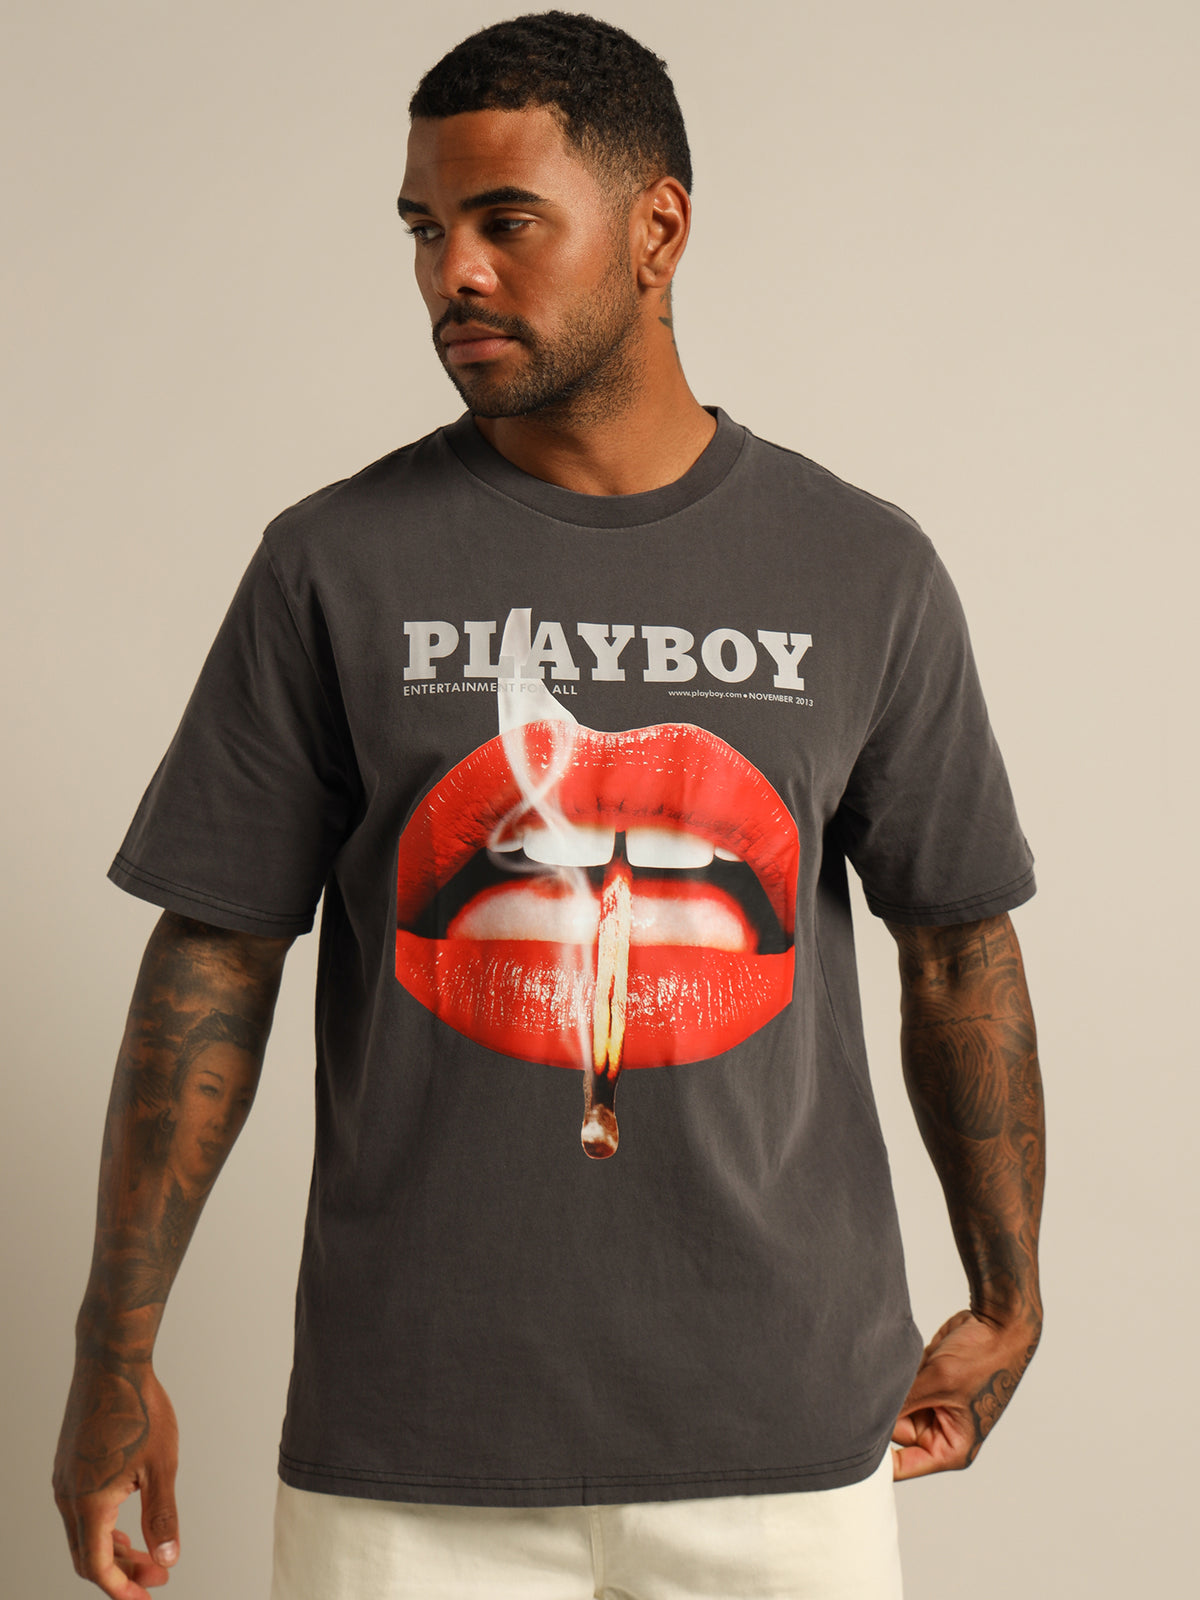 Playboy November 2013 T-Shirt in Vintage Black